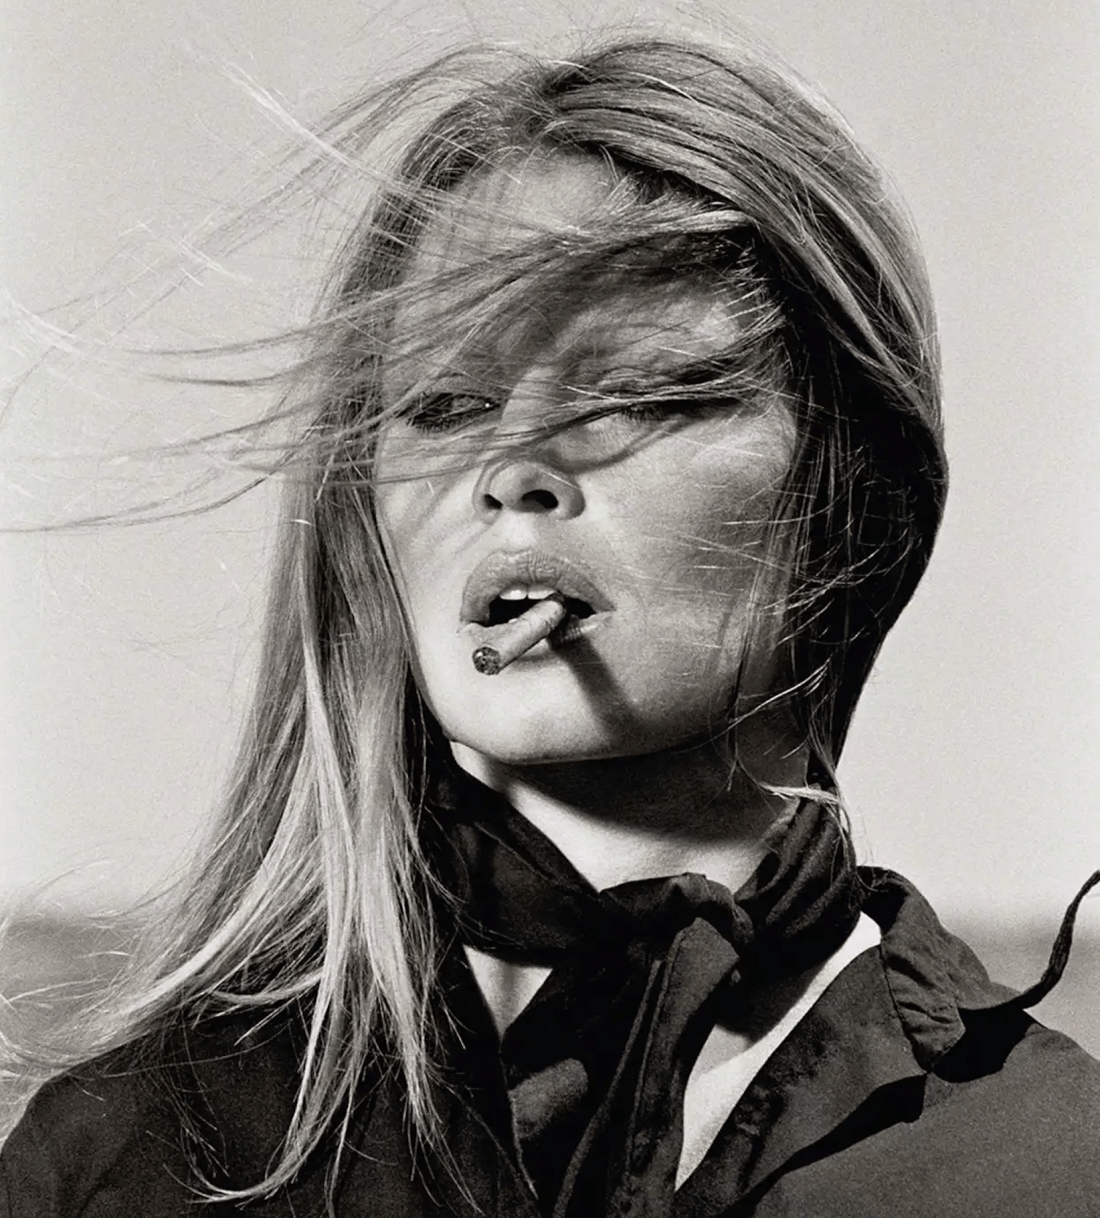 Terry O'Neill, Brigitte Bardot, 1971